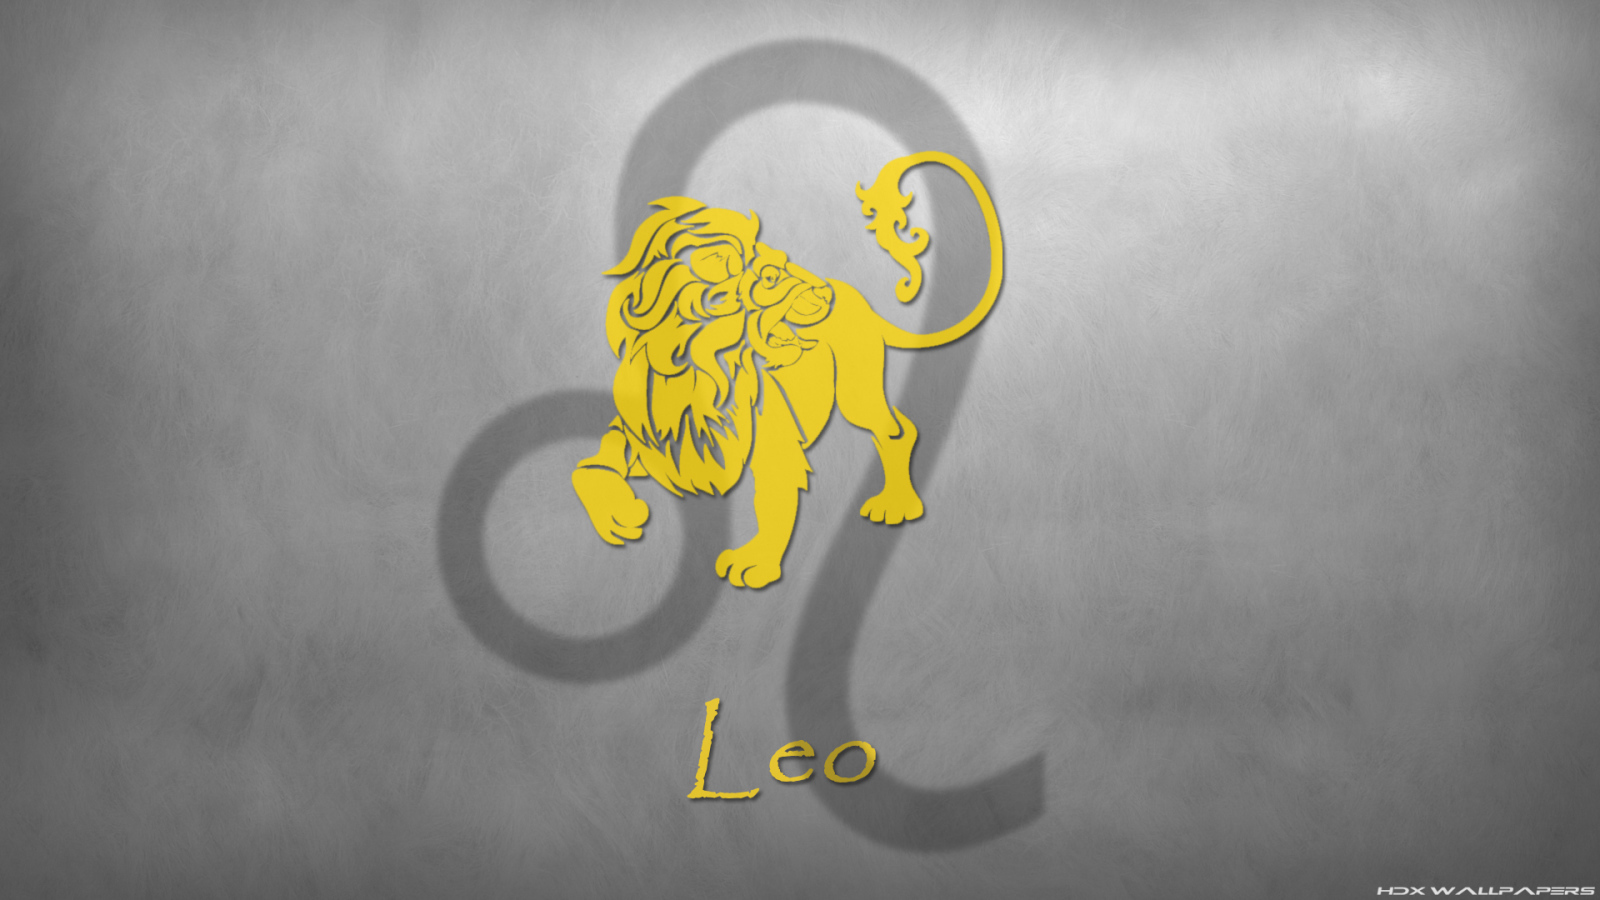  Zodiac sign Leo